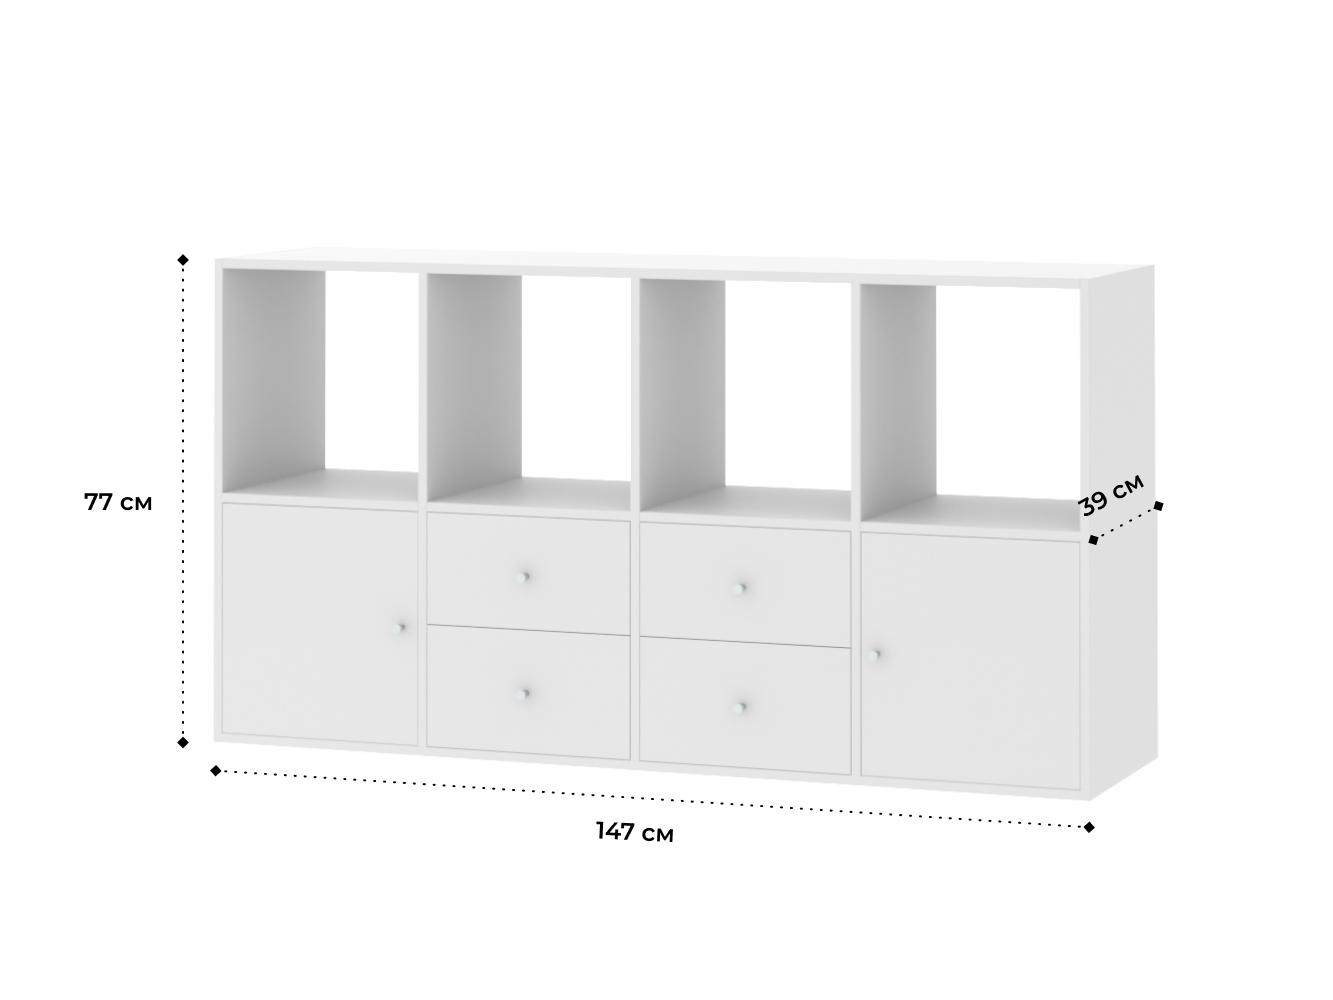  Стеллаж Билли 122 white ИКЕА (IKEA) изображение товара